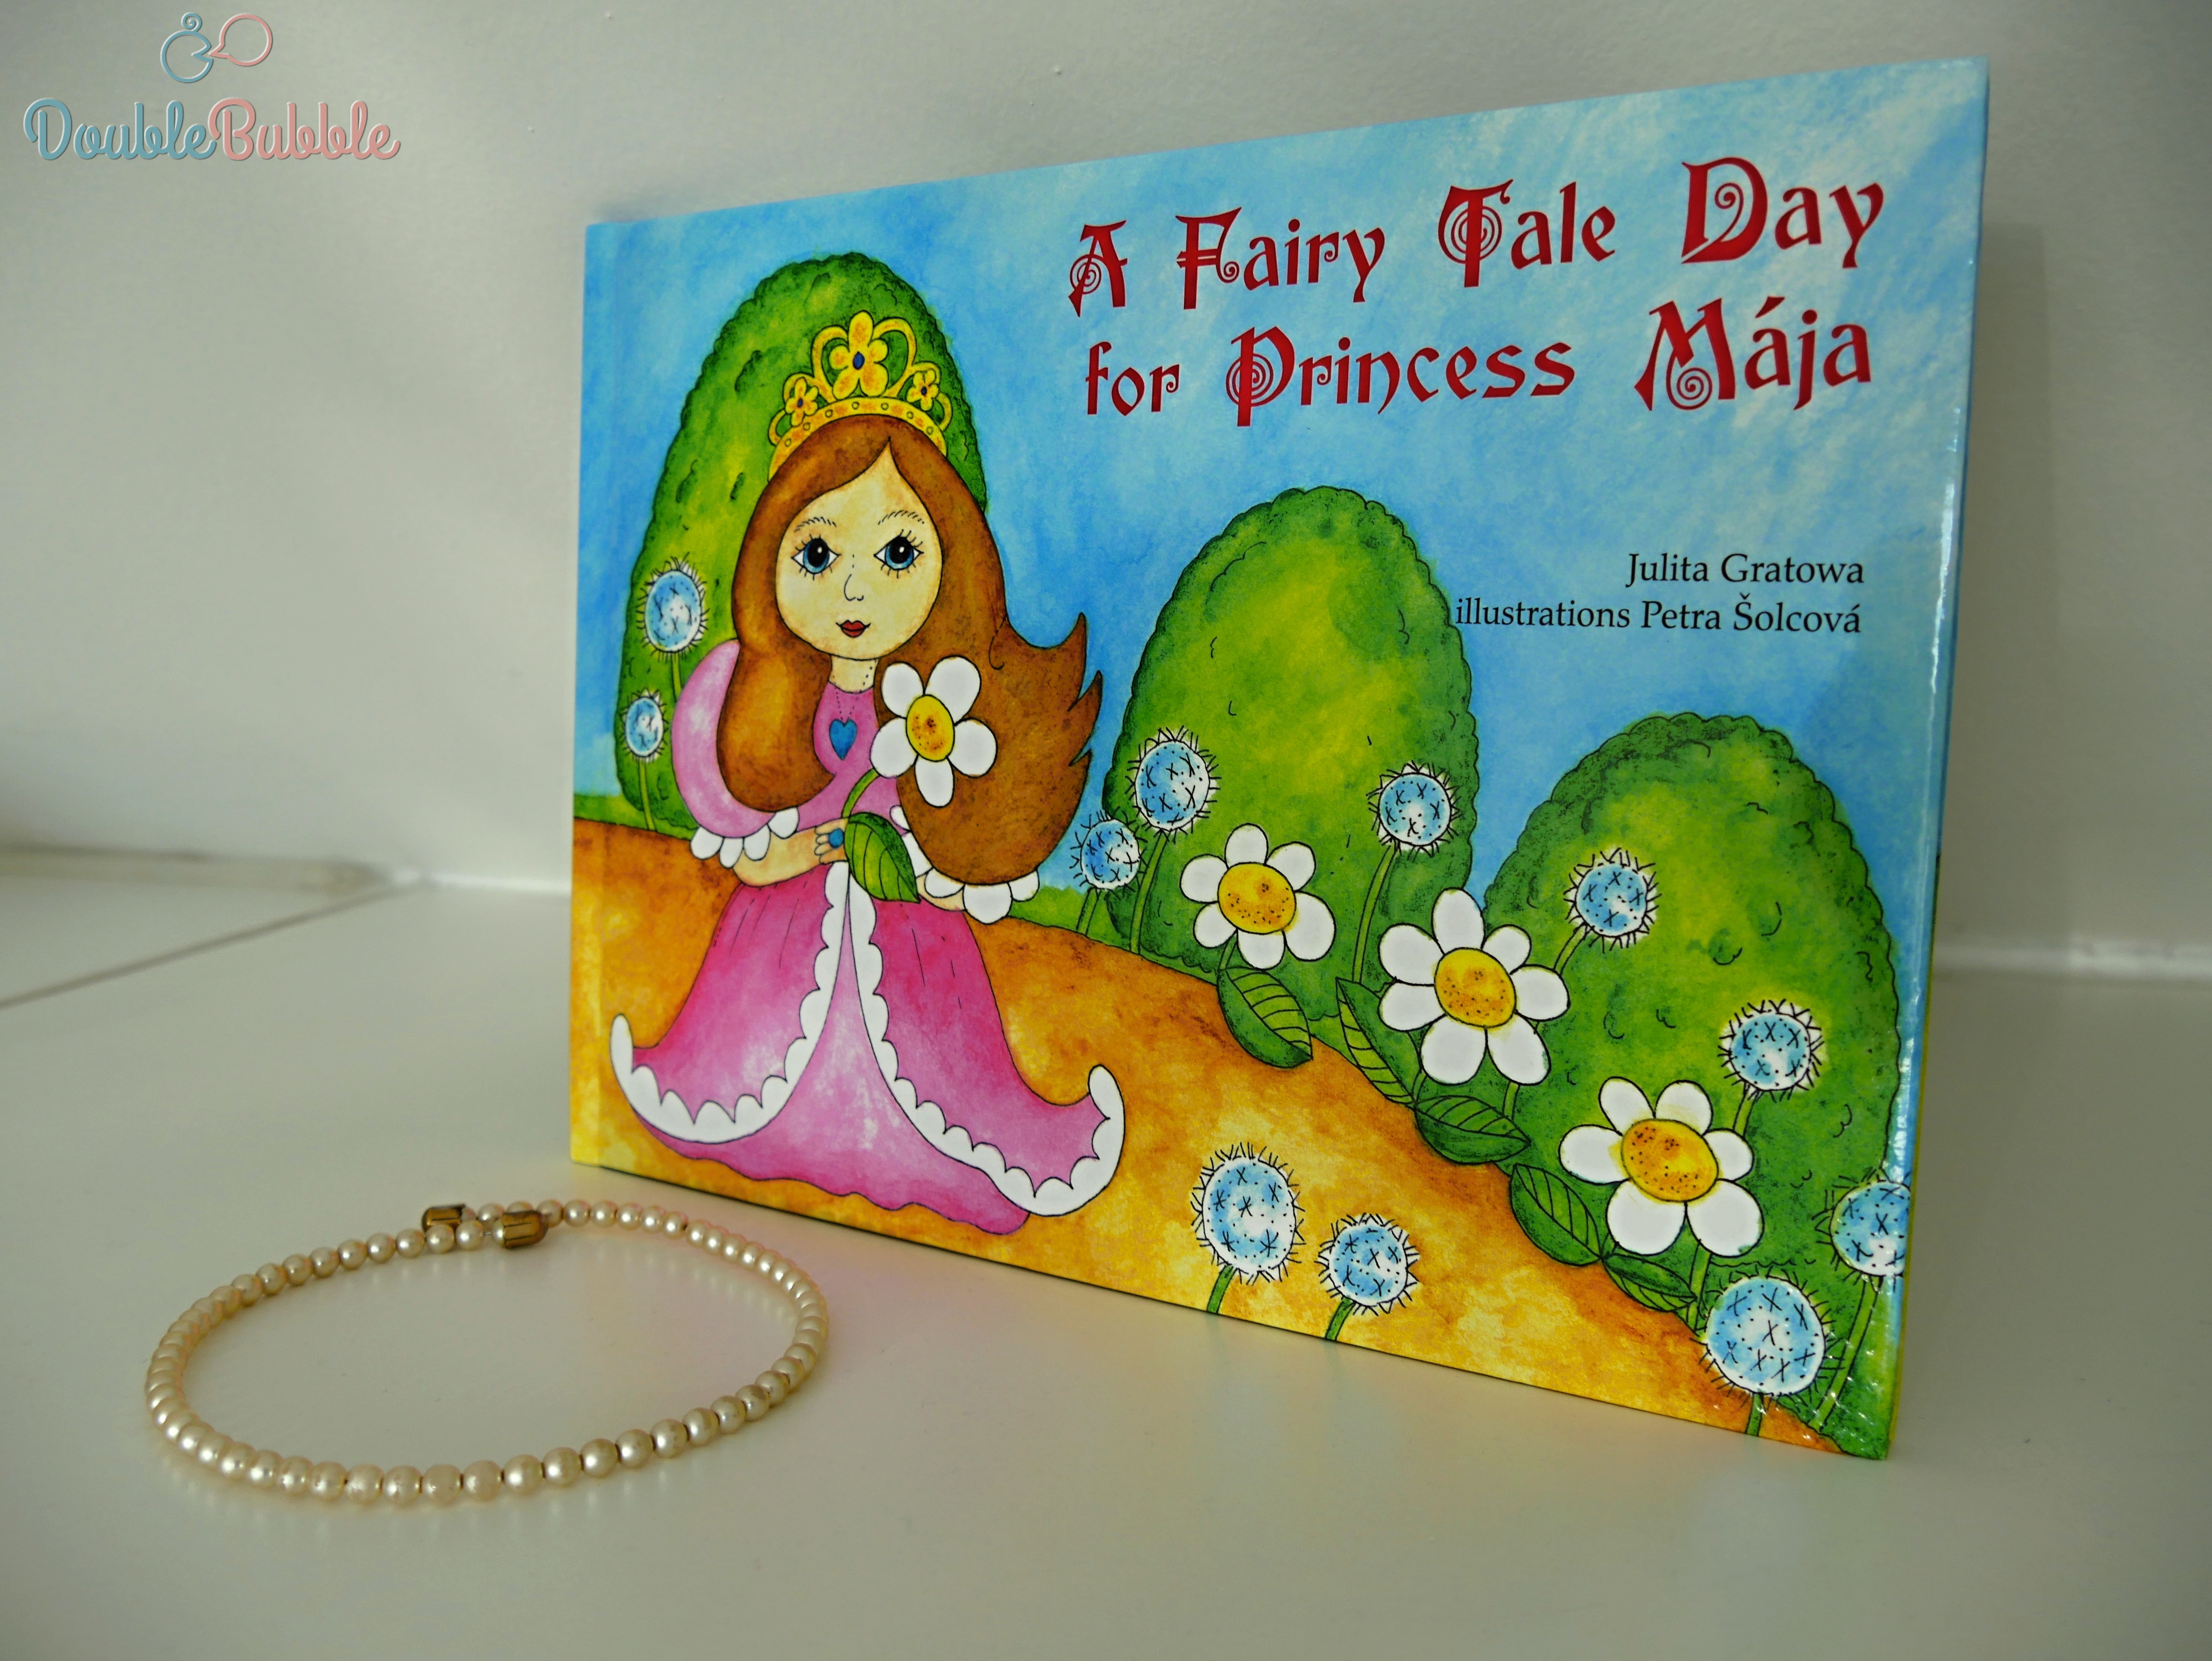 A Fairy Tale Day for Princess Mája